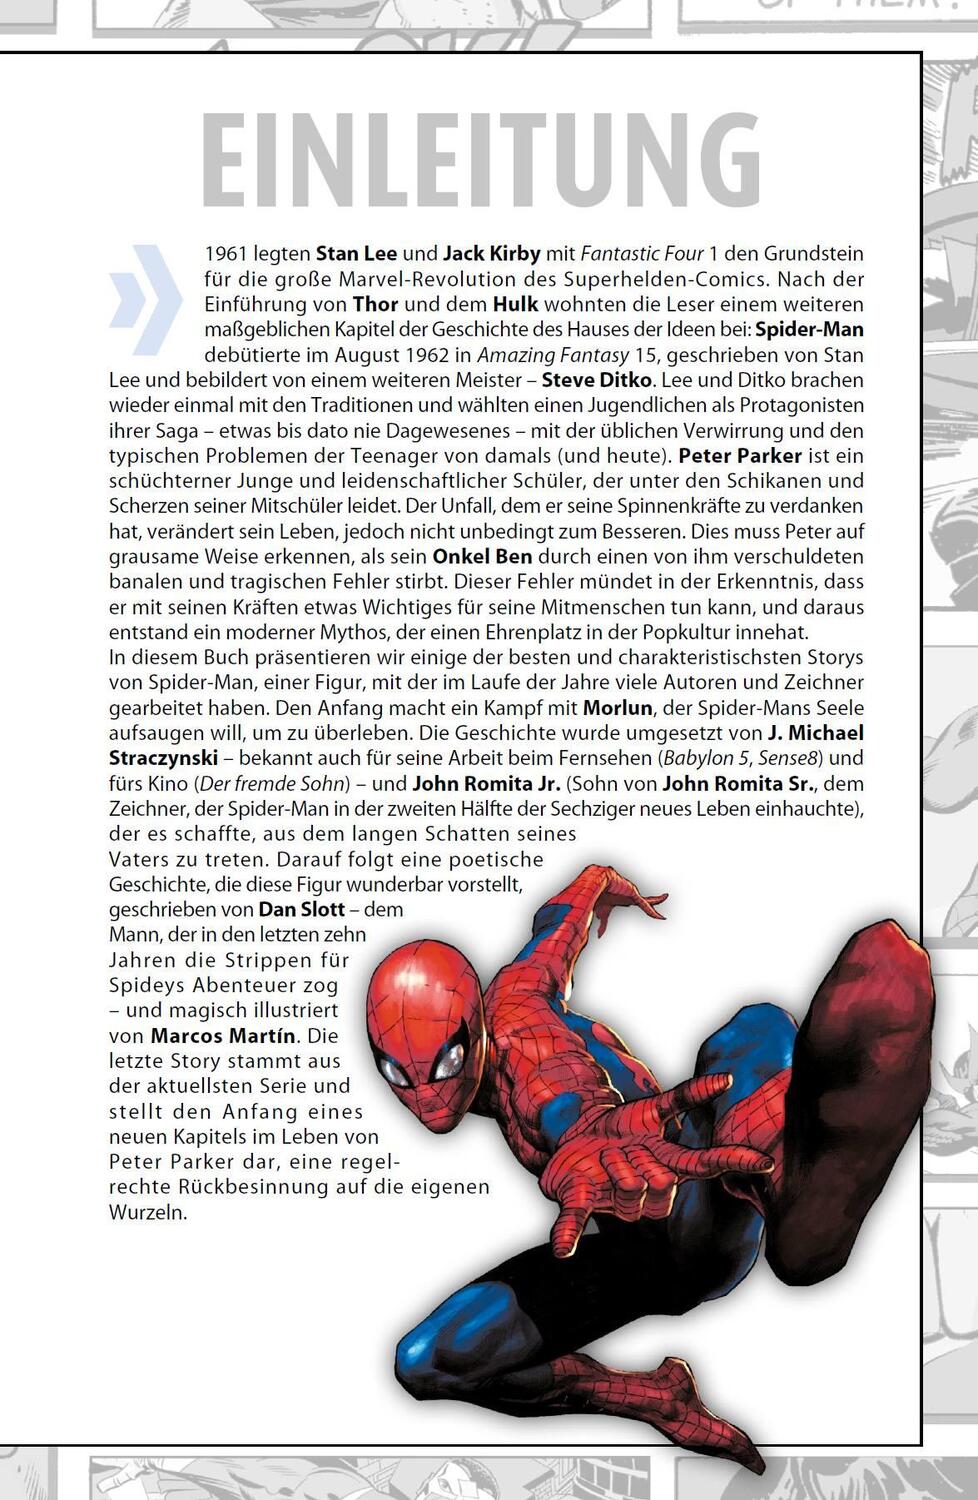 Bild: 9783741611353 | Avengers Collection: Spider-Man | Robbie Thompson (u. a.) | Buch